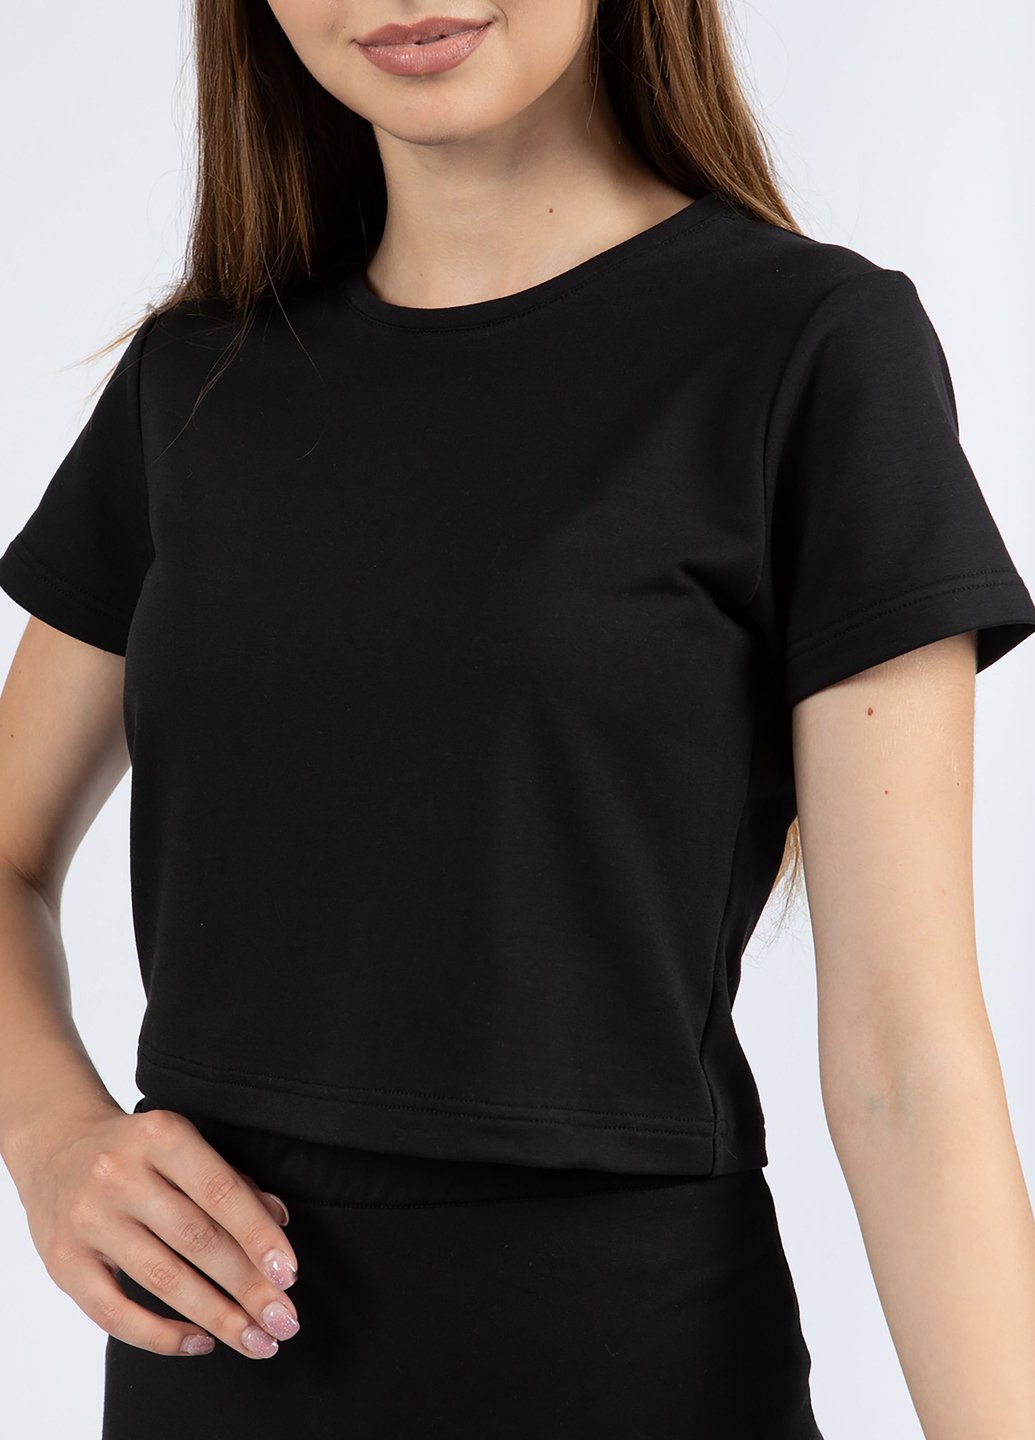 Купить Укороченная футболка женская Merlini Монруж 800000008 - Черный, 42 в интернет-магазине